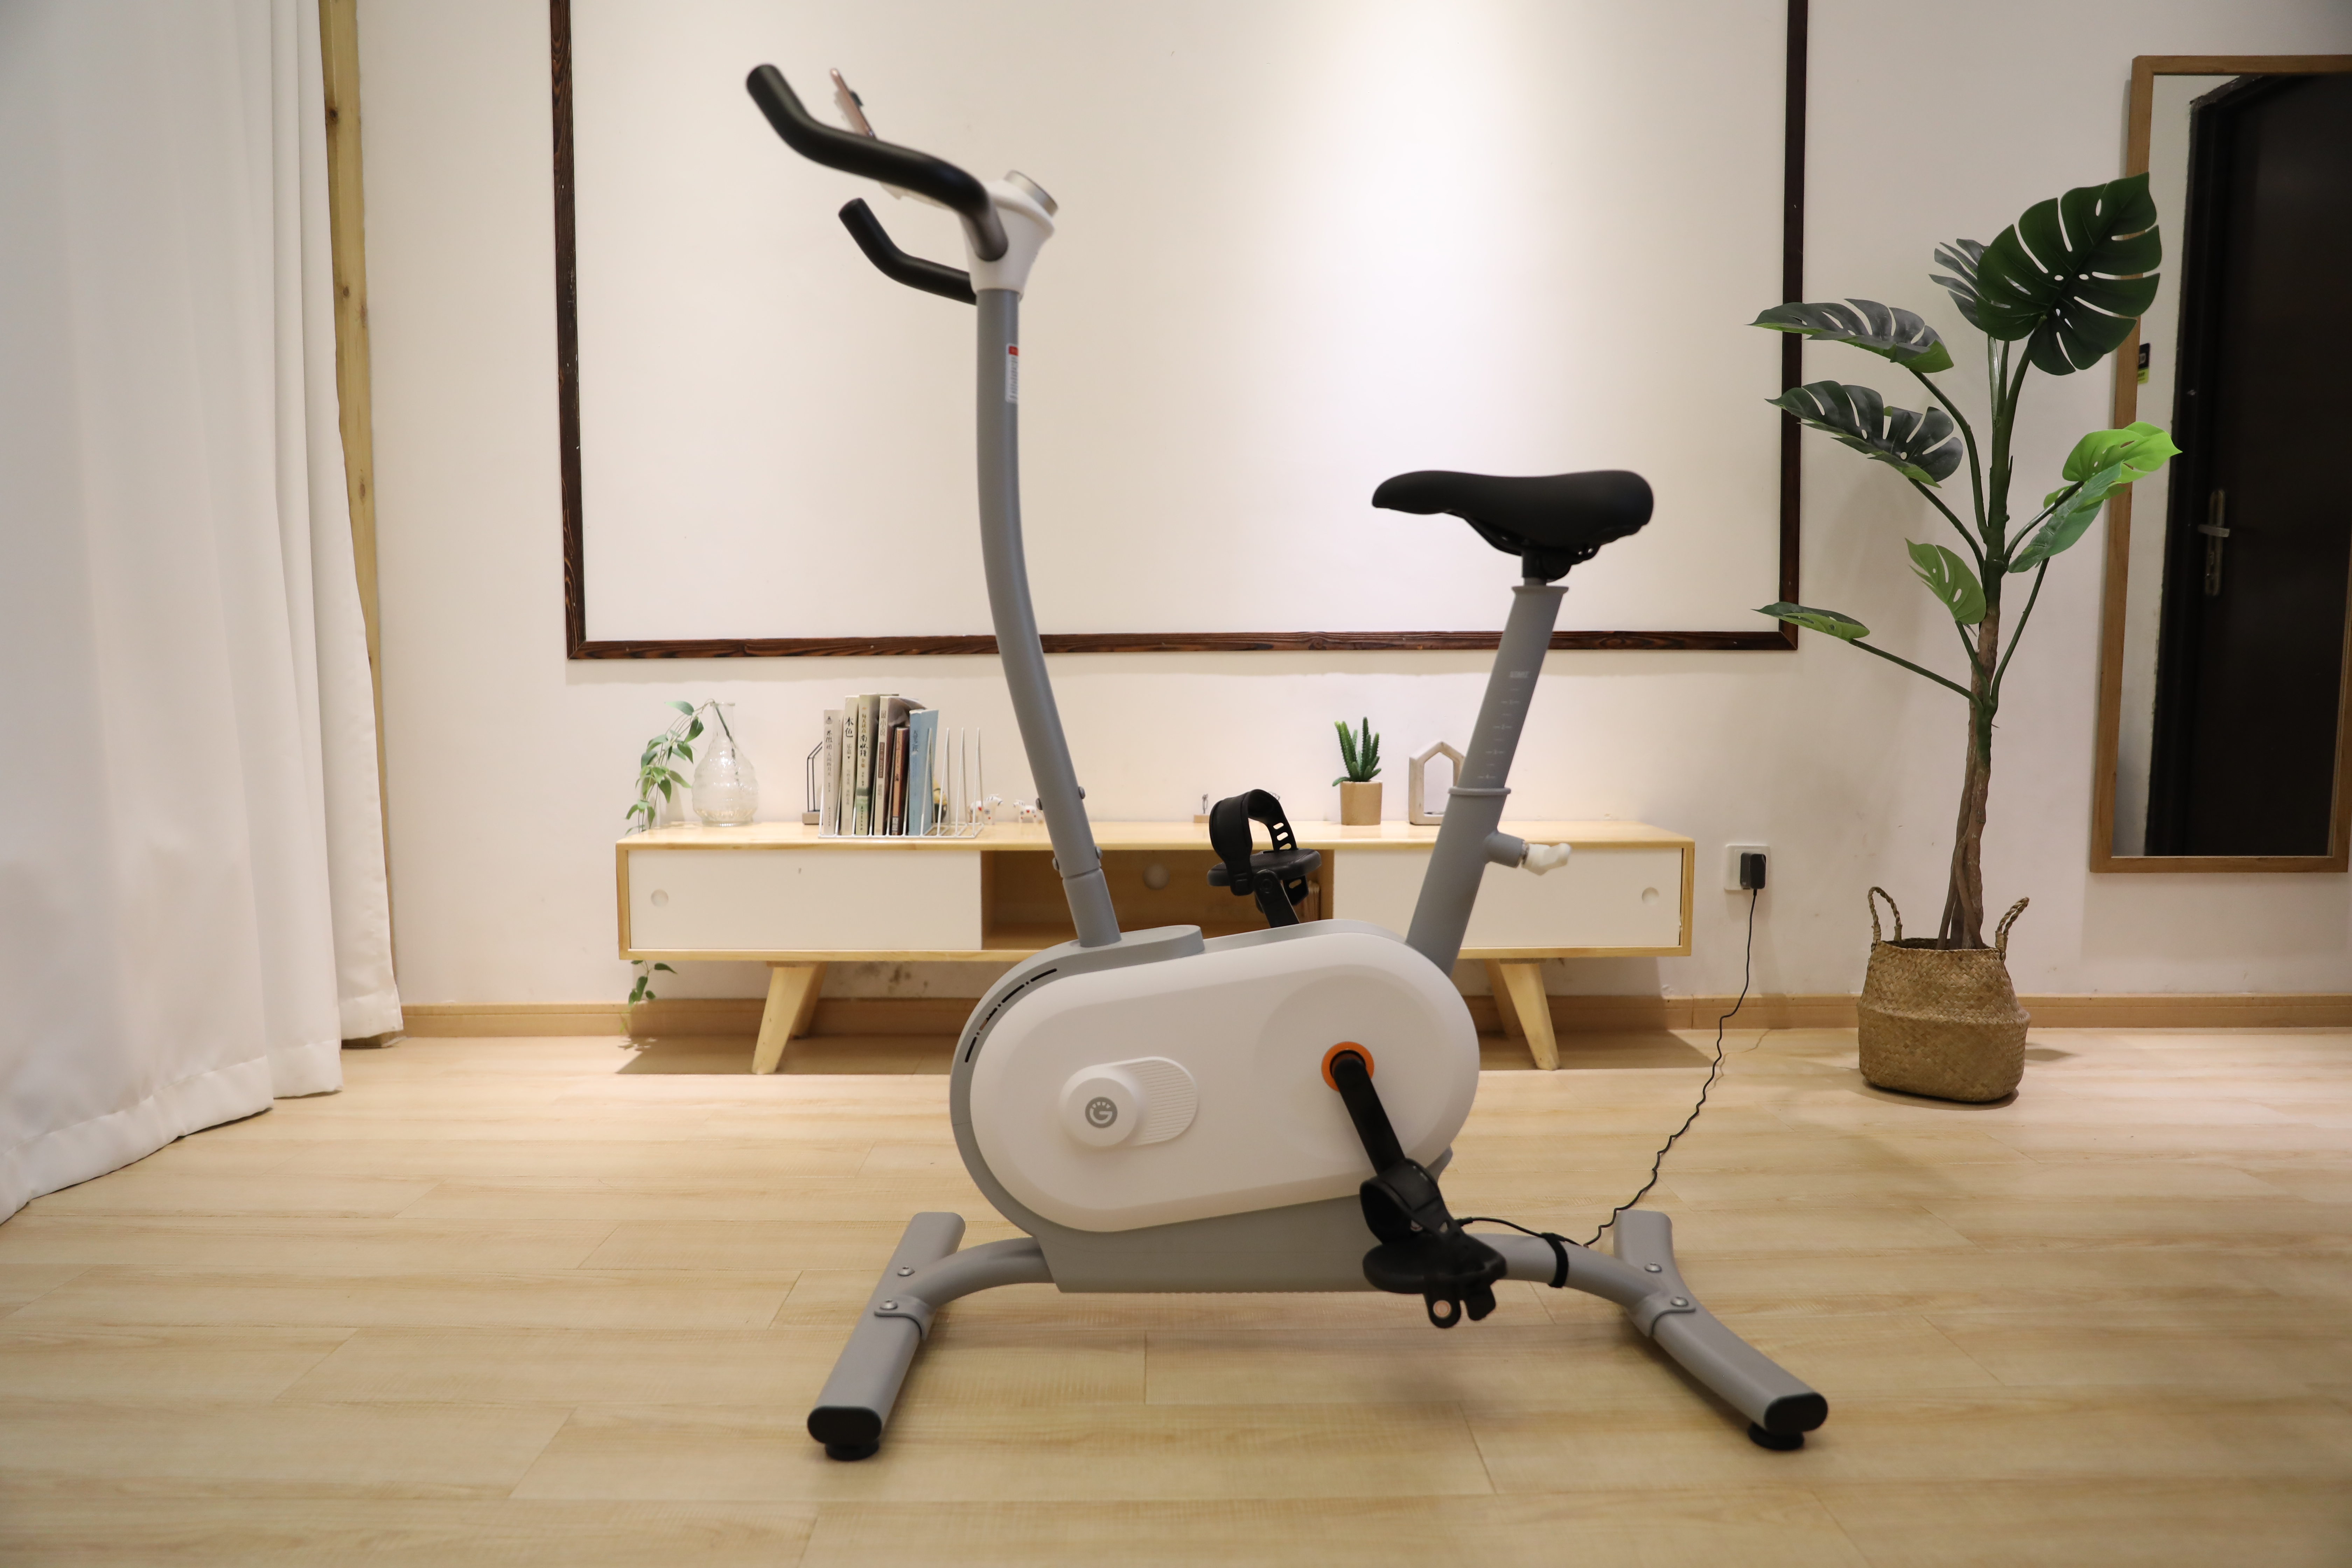 商用动感单车延伸至家庭场景，「NEXGIM」AI功率健身车要对标泰诺健